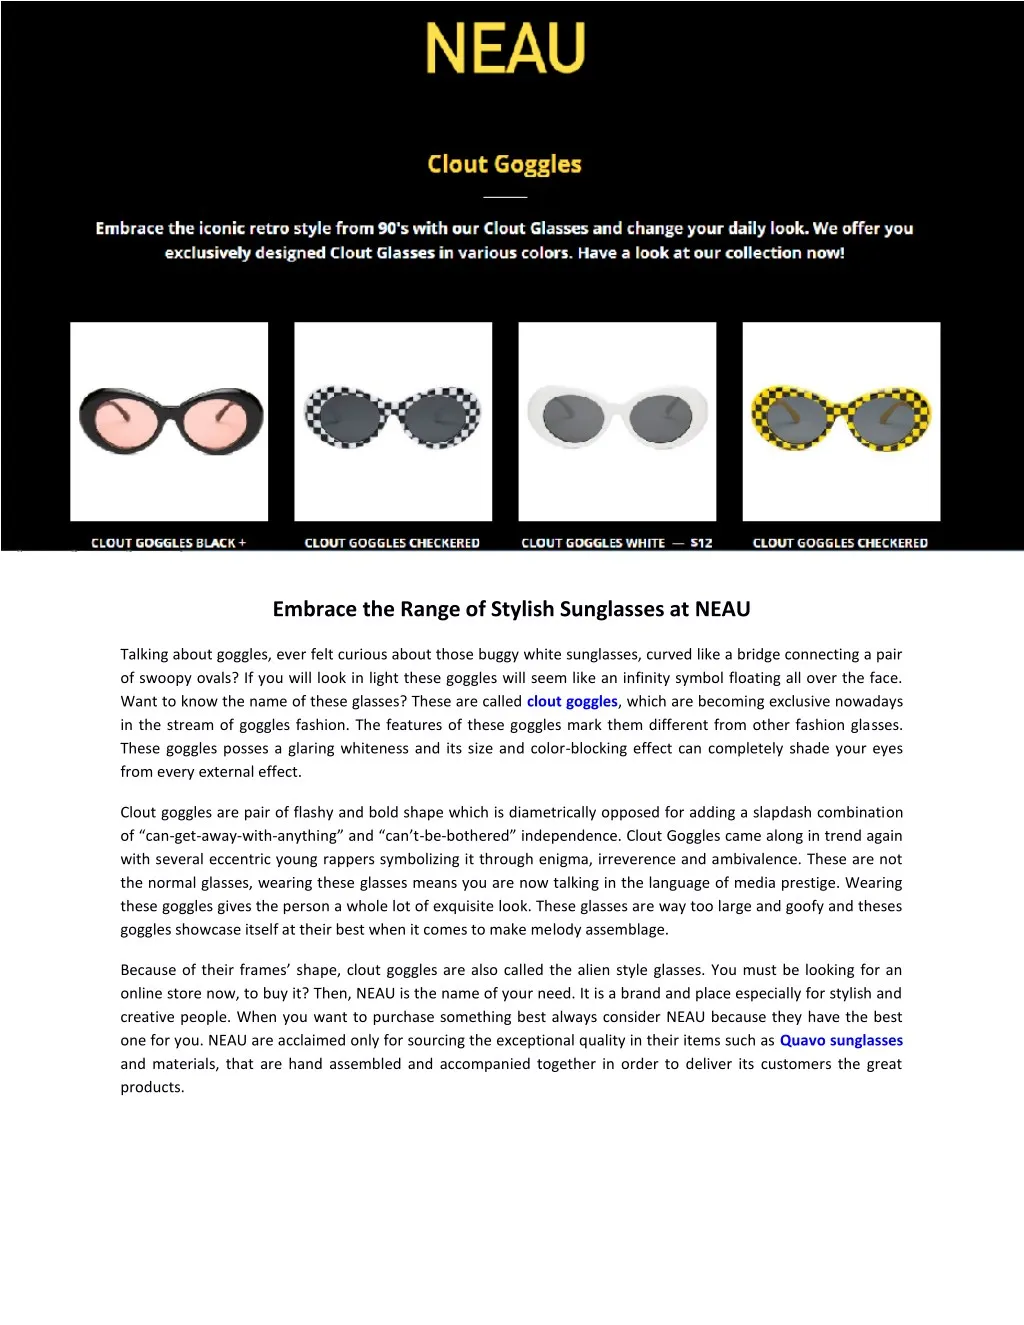 embrace the range of stylish sunglasses at neau